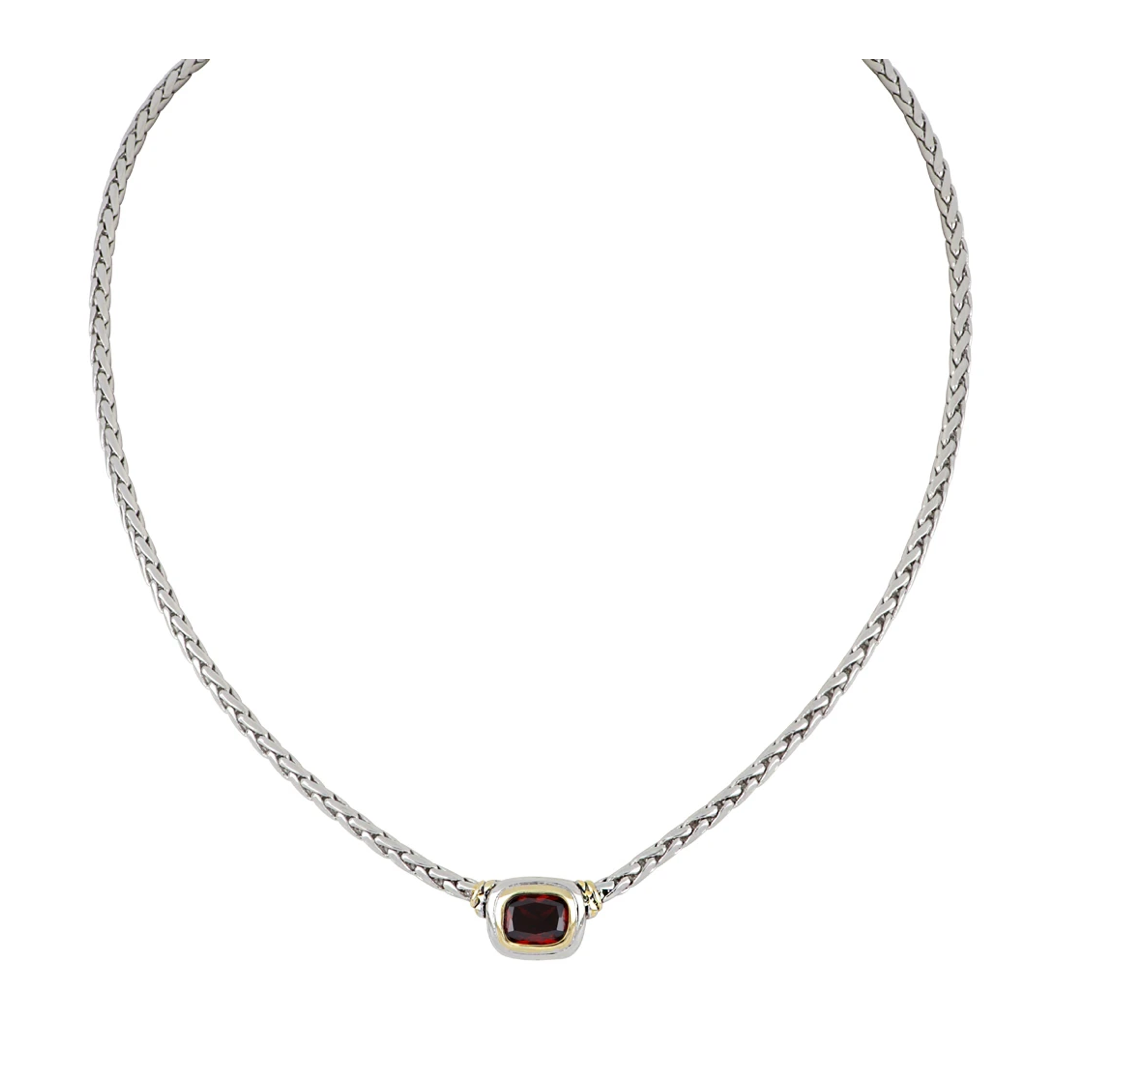 Nouveau Single Strand Necklace Garnet N2833-AN00 Necklace